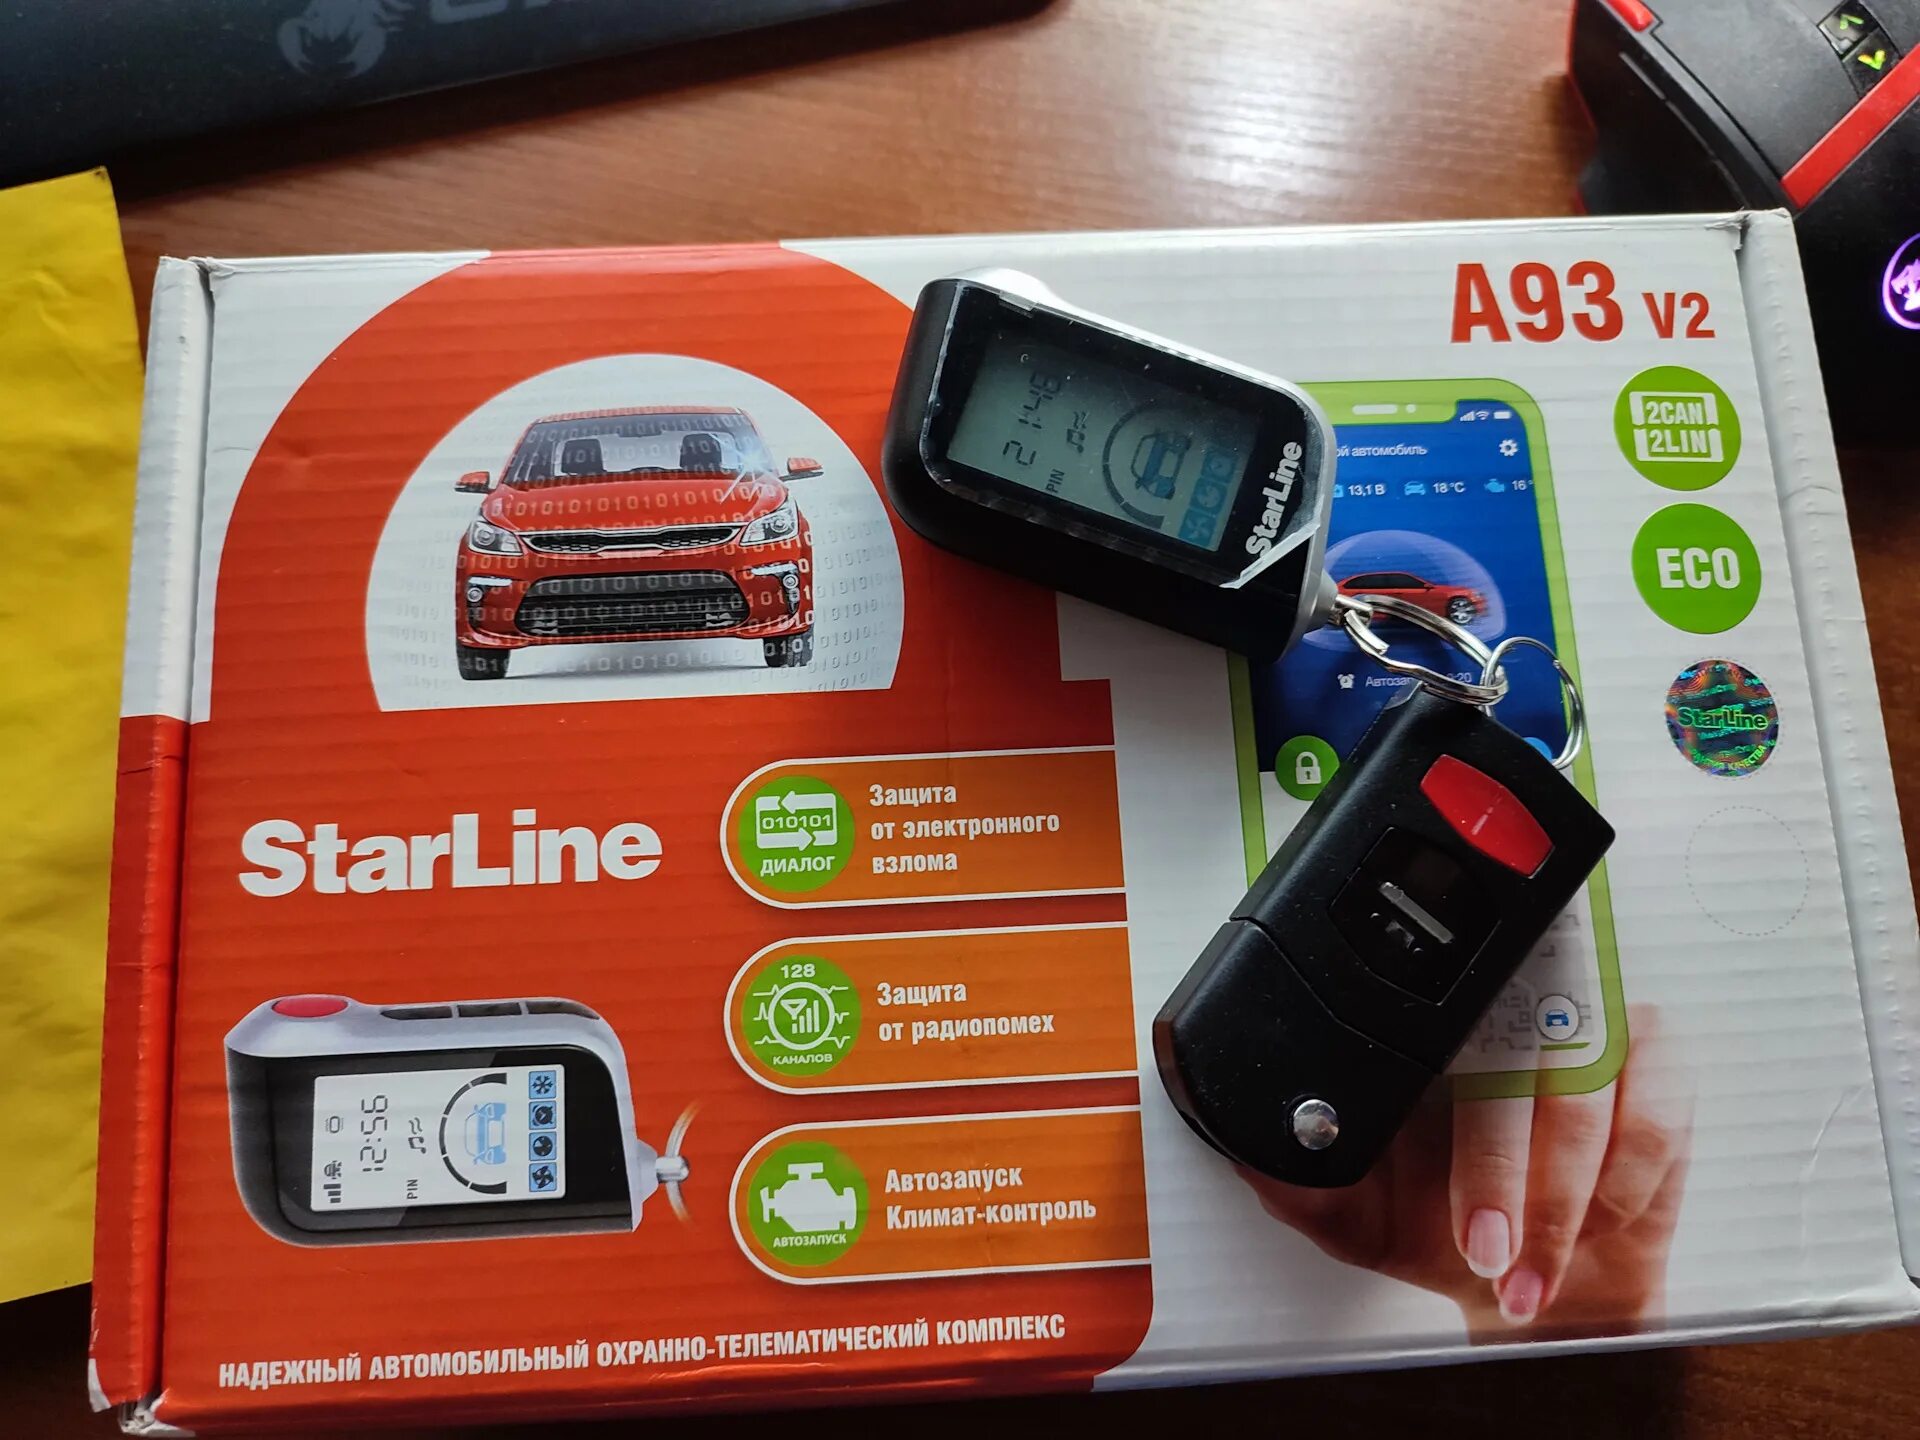 A93 2can gsm. Сигнализация с автозапуском STARLINE a93. Автосигнализация STARLINE a93 v2 2can+2lin GSM Eco. STARLINE a93 Eco. STARLINE a93 v2 полная комплектация.